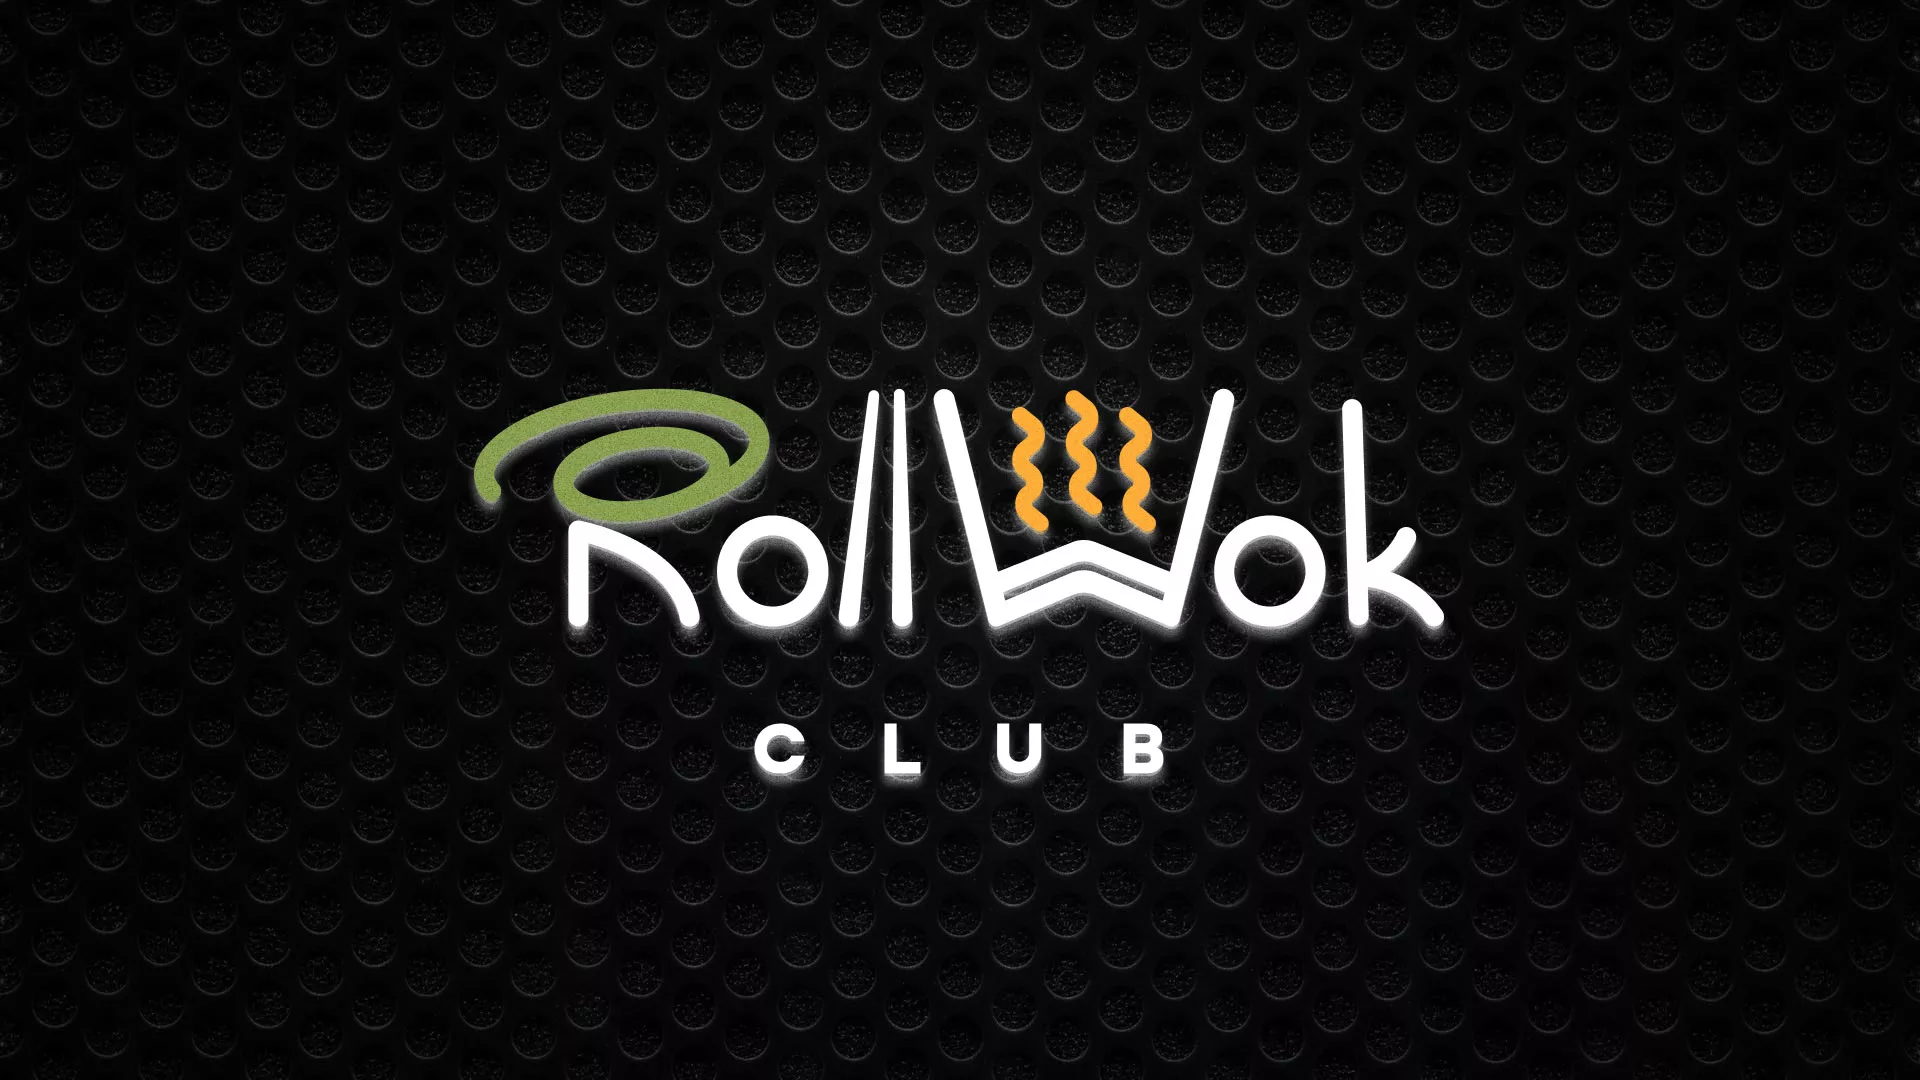 Брендирование торговых точек суши-бара «Roll Wok Club» в Оренбурге